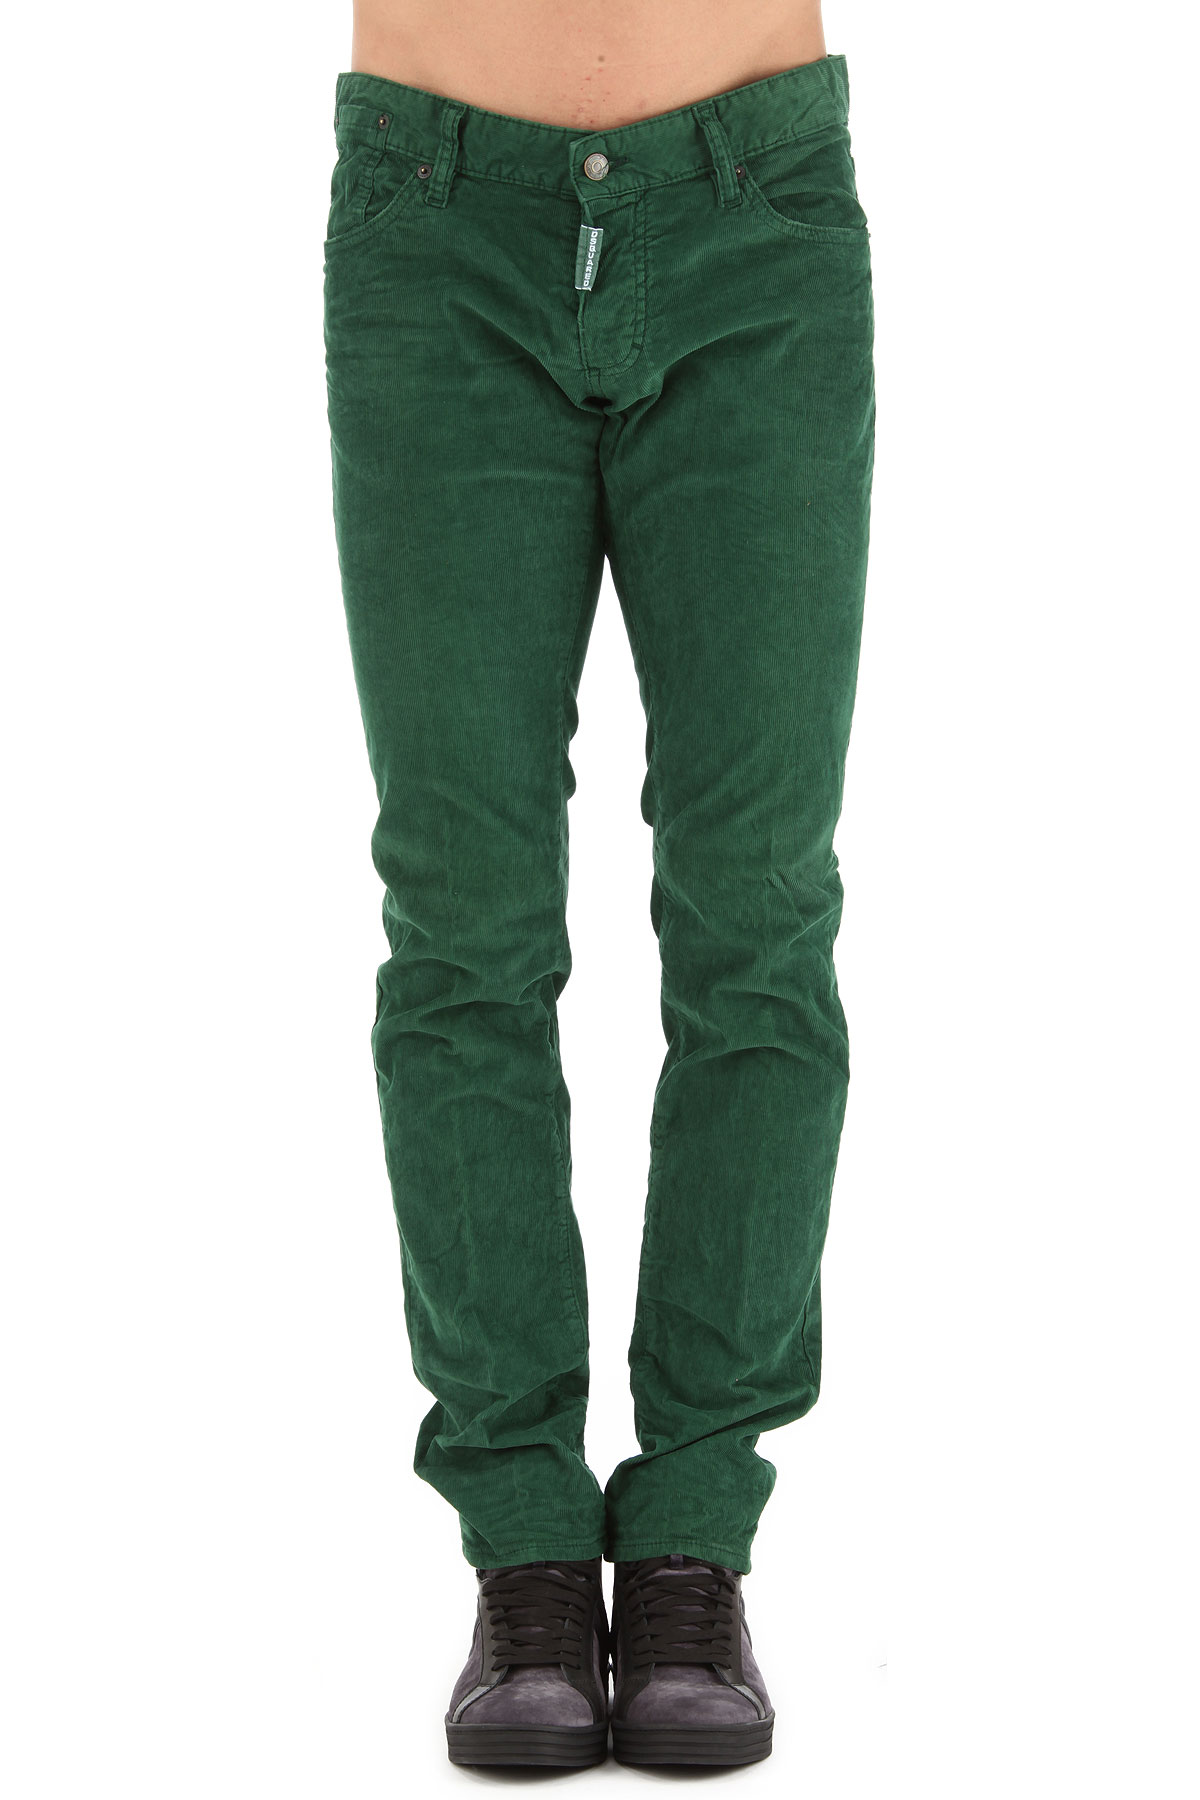 Dsquared Pantalon Homme Outlet, Vert, Coton, 2017, 42 44 46